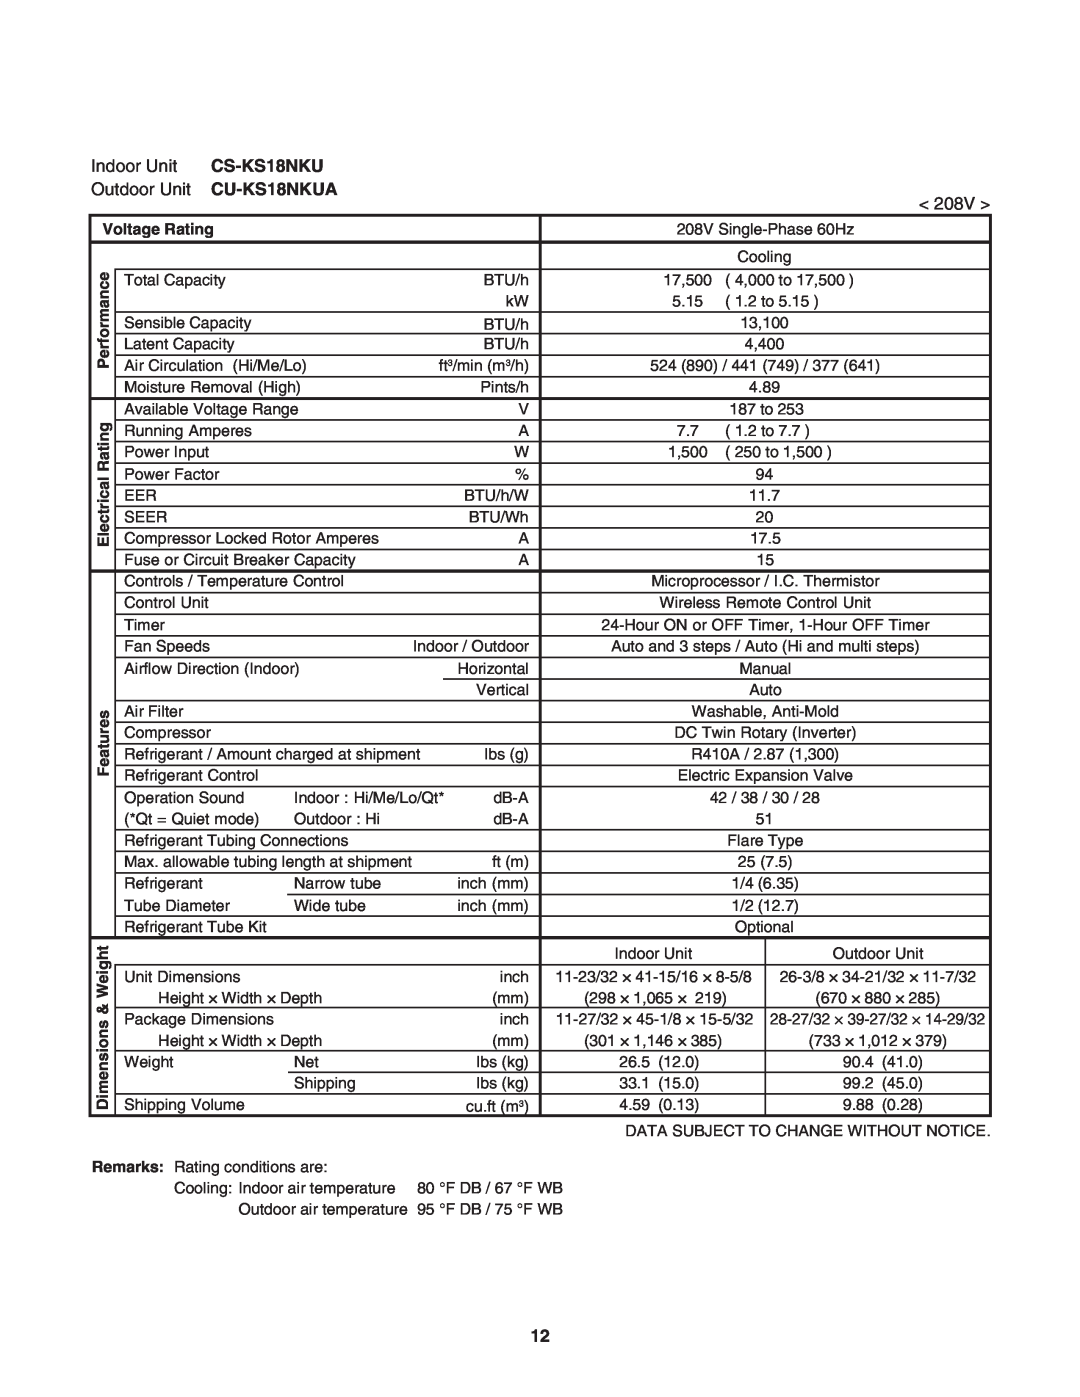 Panasonic CS-KS24NKU, CU-KS24NKUA service manual CS-KS18NKU, CU-KS18NKUA, Voltage Rating, ical, Electr 